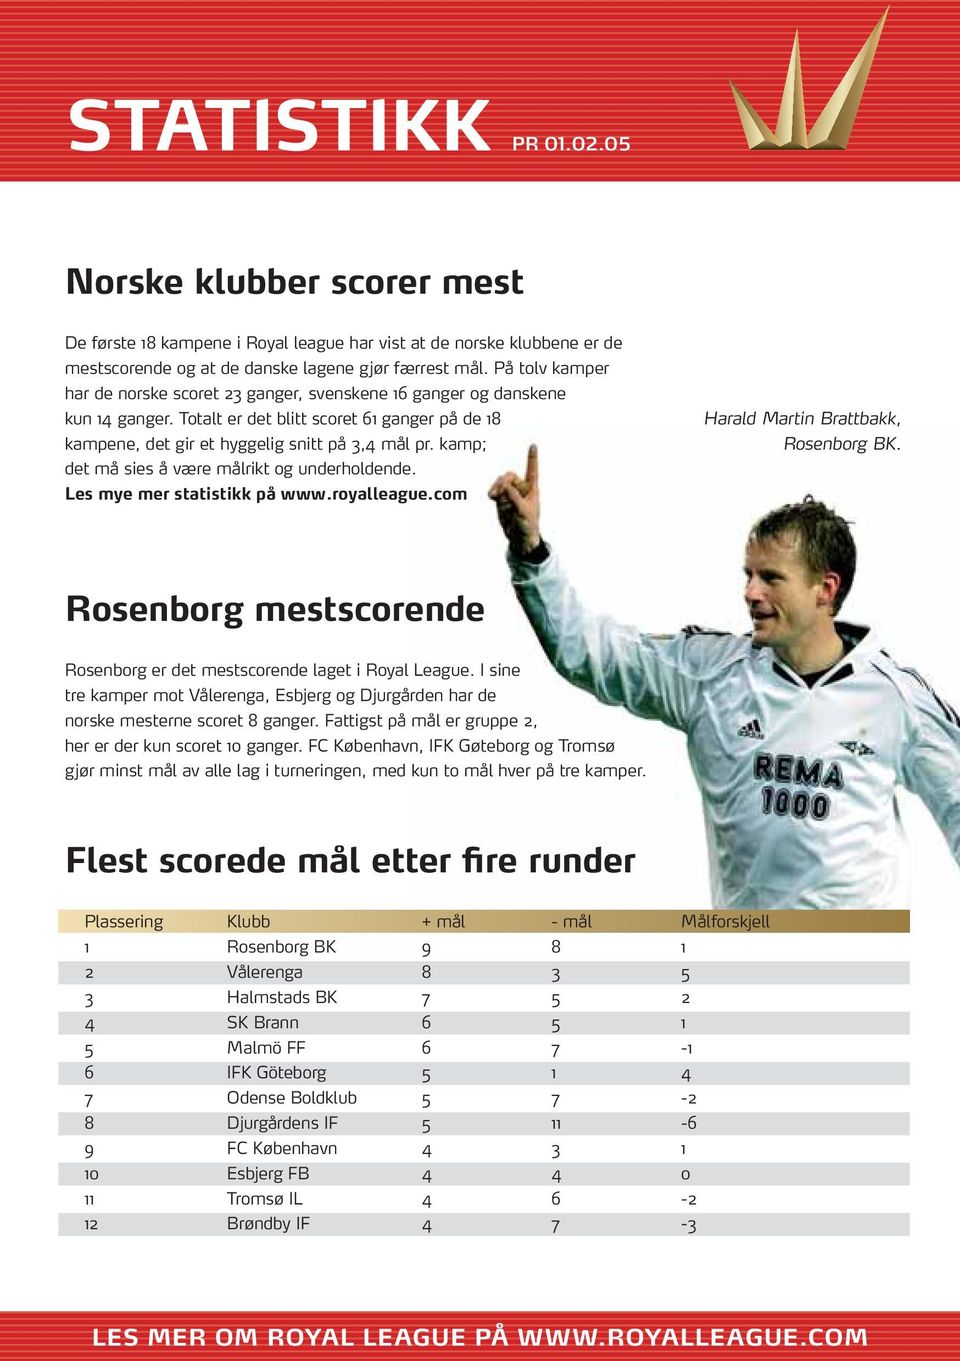 kamp; det må sies å være målrikt og underholdende. Les mye mer statistikk på www.royalleague.com Harald Martin Brattbakk, Rosenborg BK.